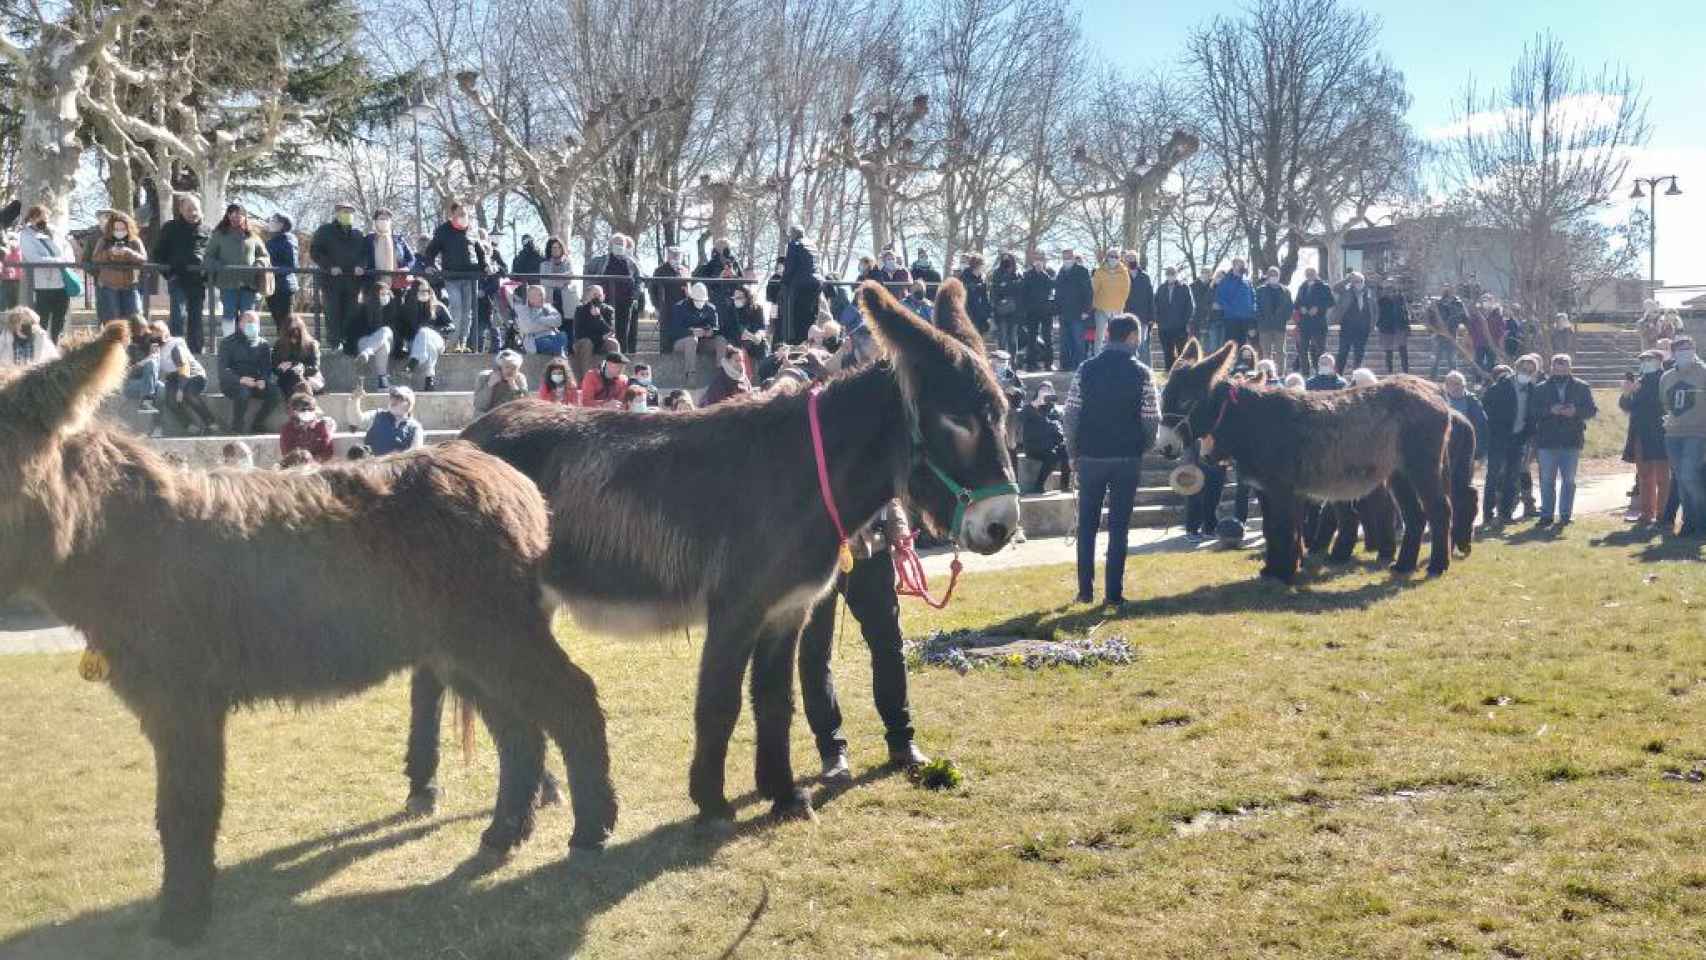 Concurso de burros raza zamorana-leonesa en Valencia de Don Juan